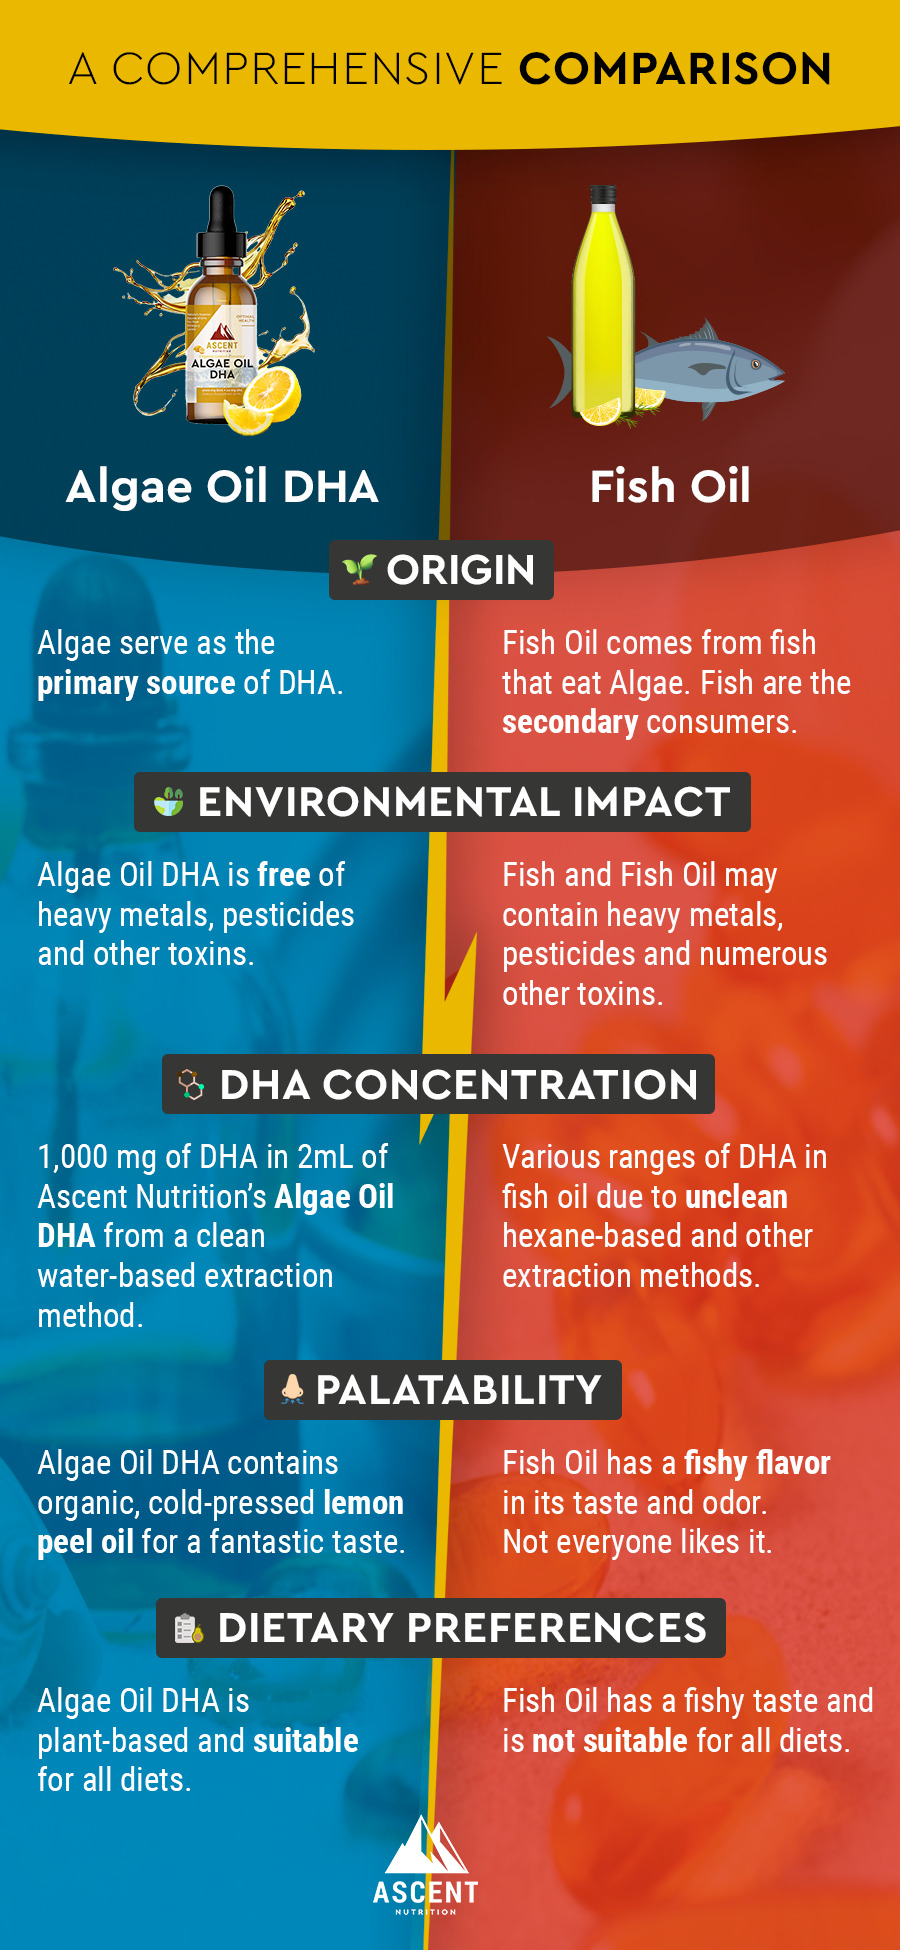 Algae Oil DHA vs Fish Oil - A Comprehensive Comparison